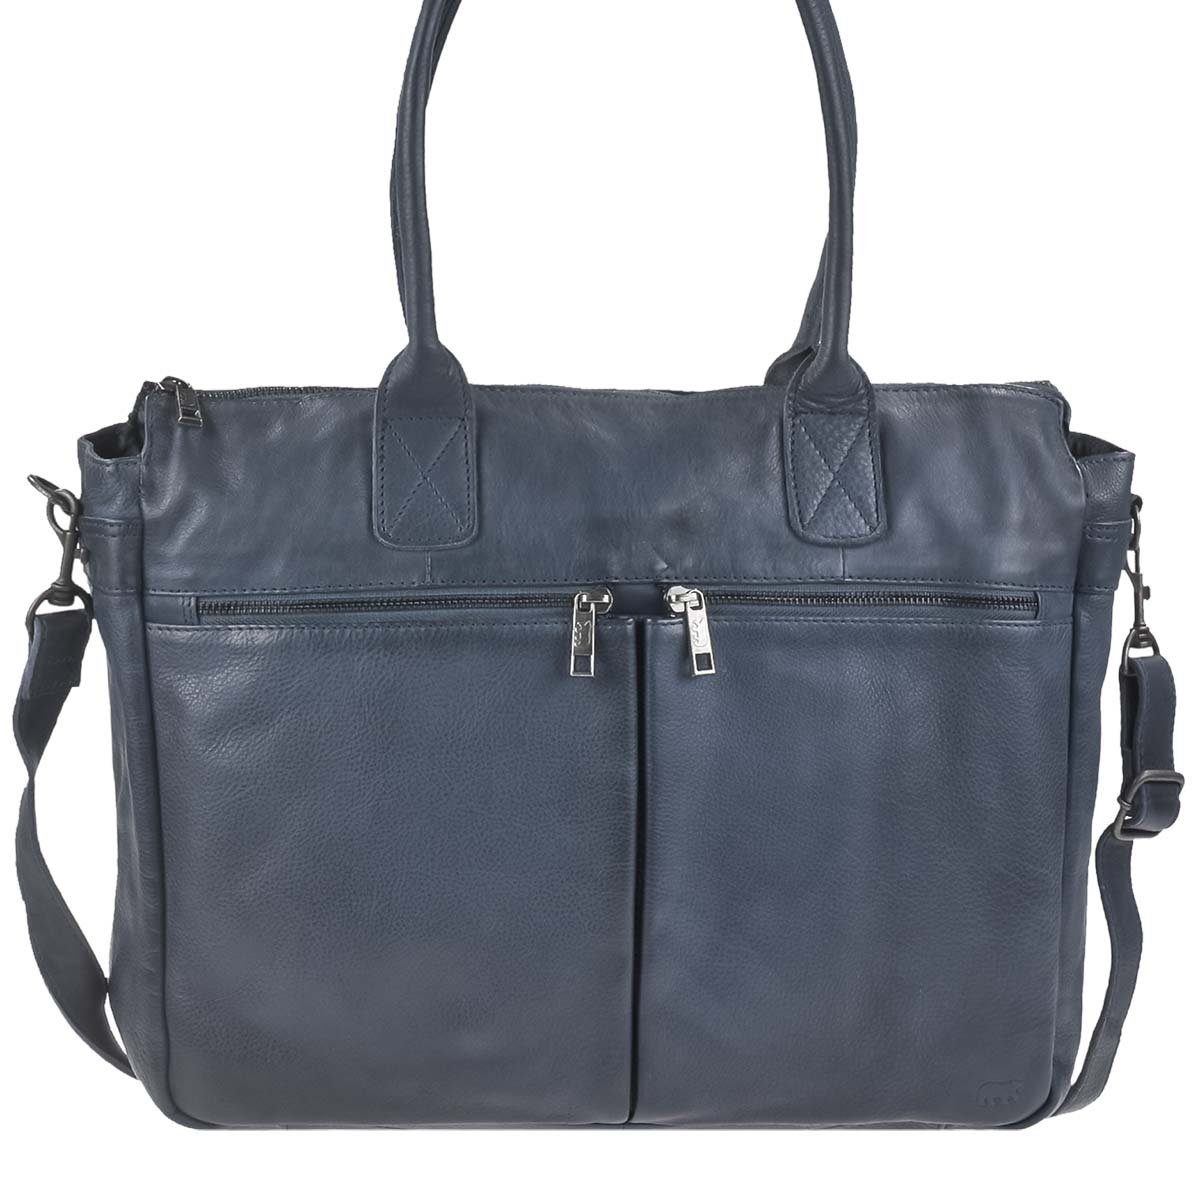 Bear Design Shopper "Binni" Callisto Pelle Leder, große Handtasche, Schultertasche 45x32cm, weich, knautschig blau